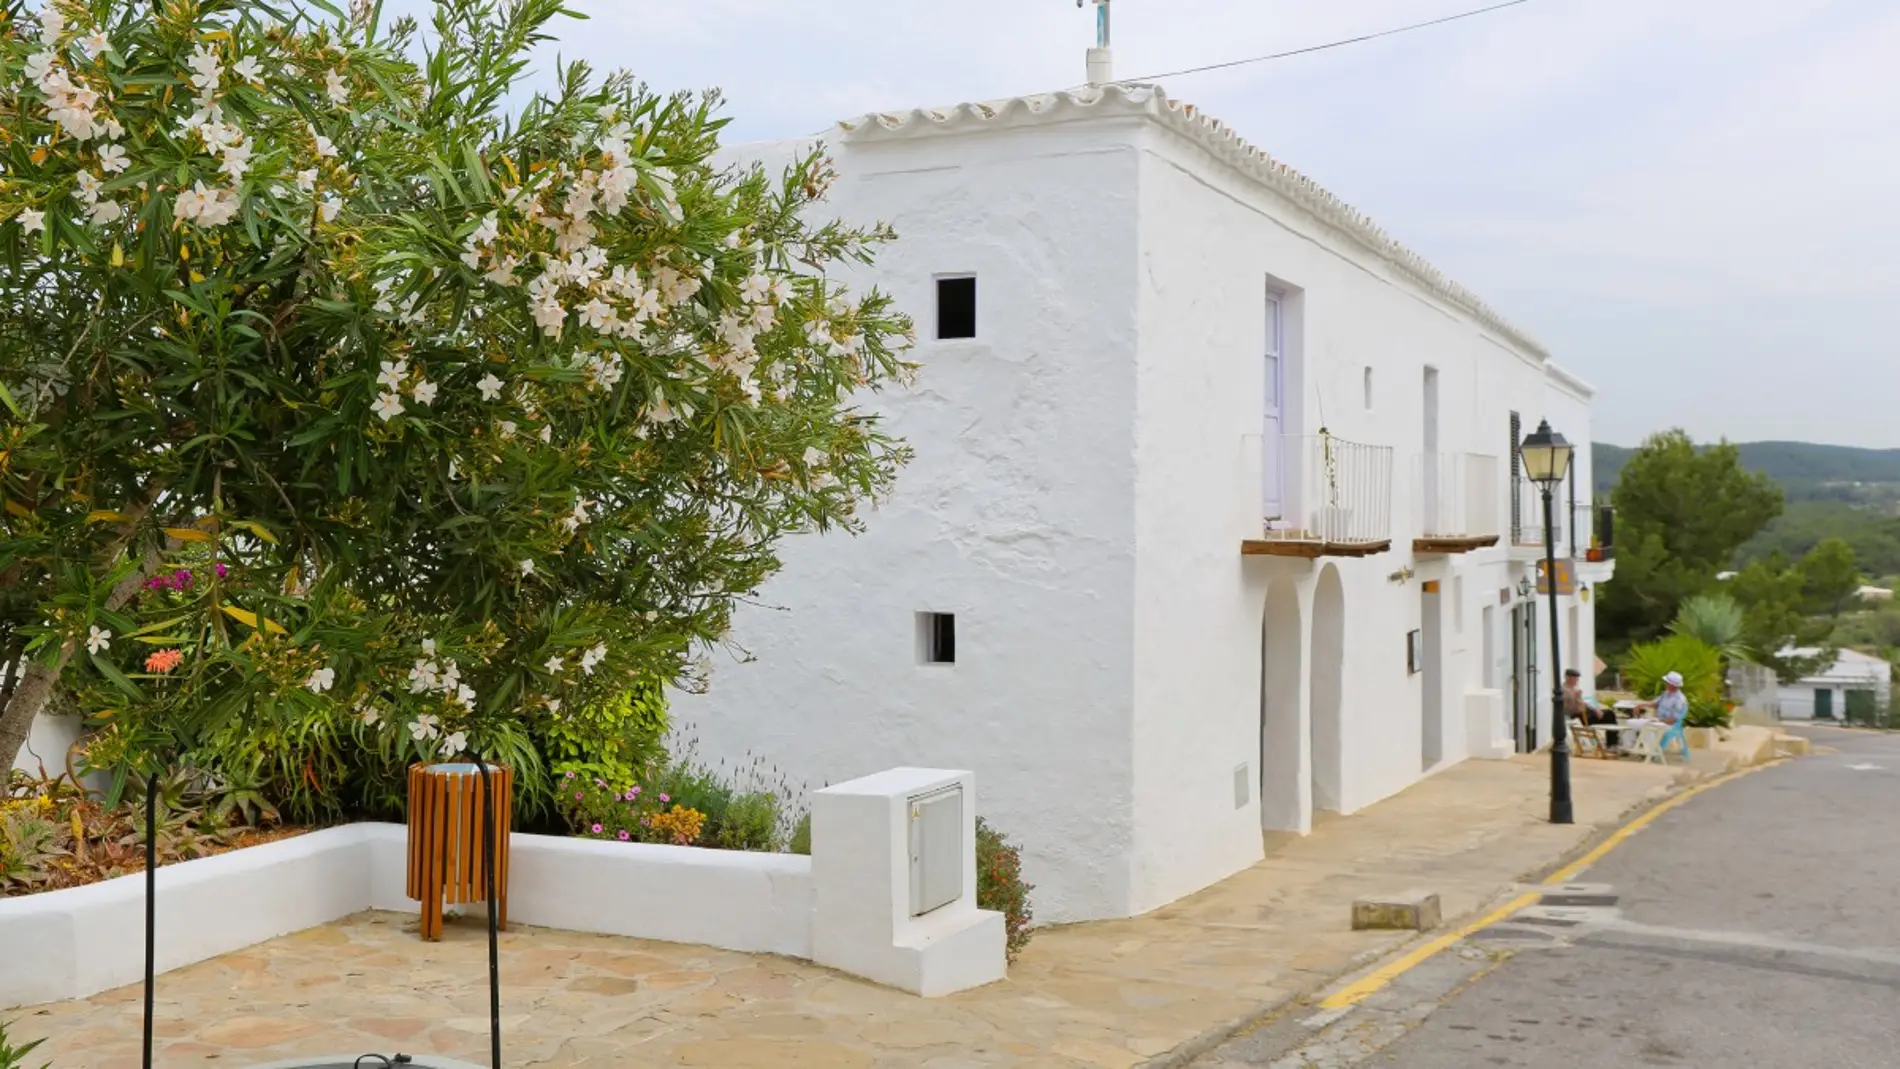 El pueblo de Sant Miquel de Balanzat, en Ibiza, tendrá una nueva calle 